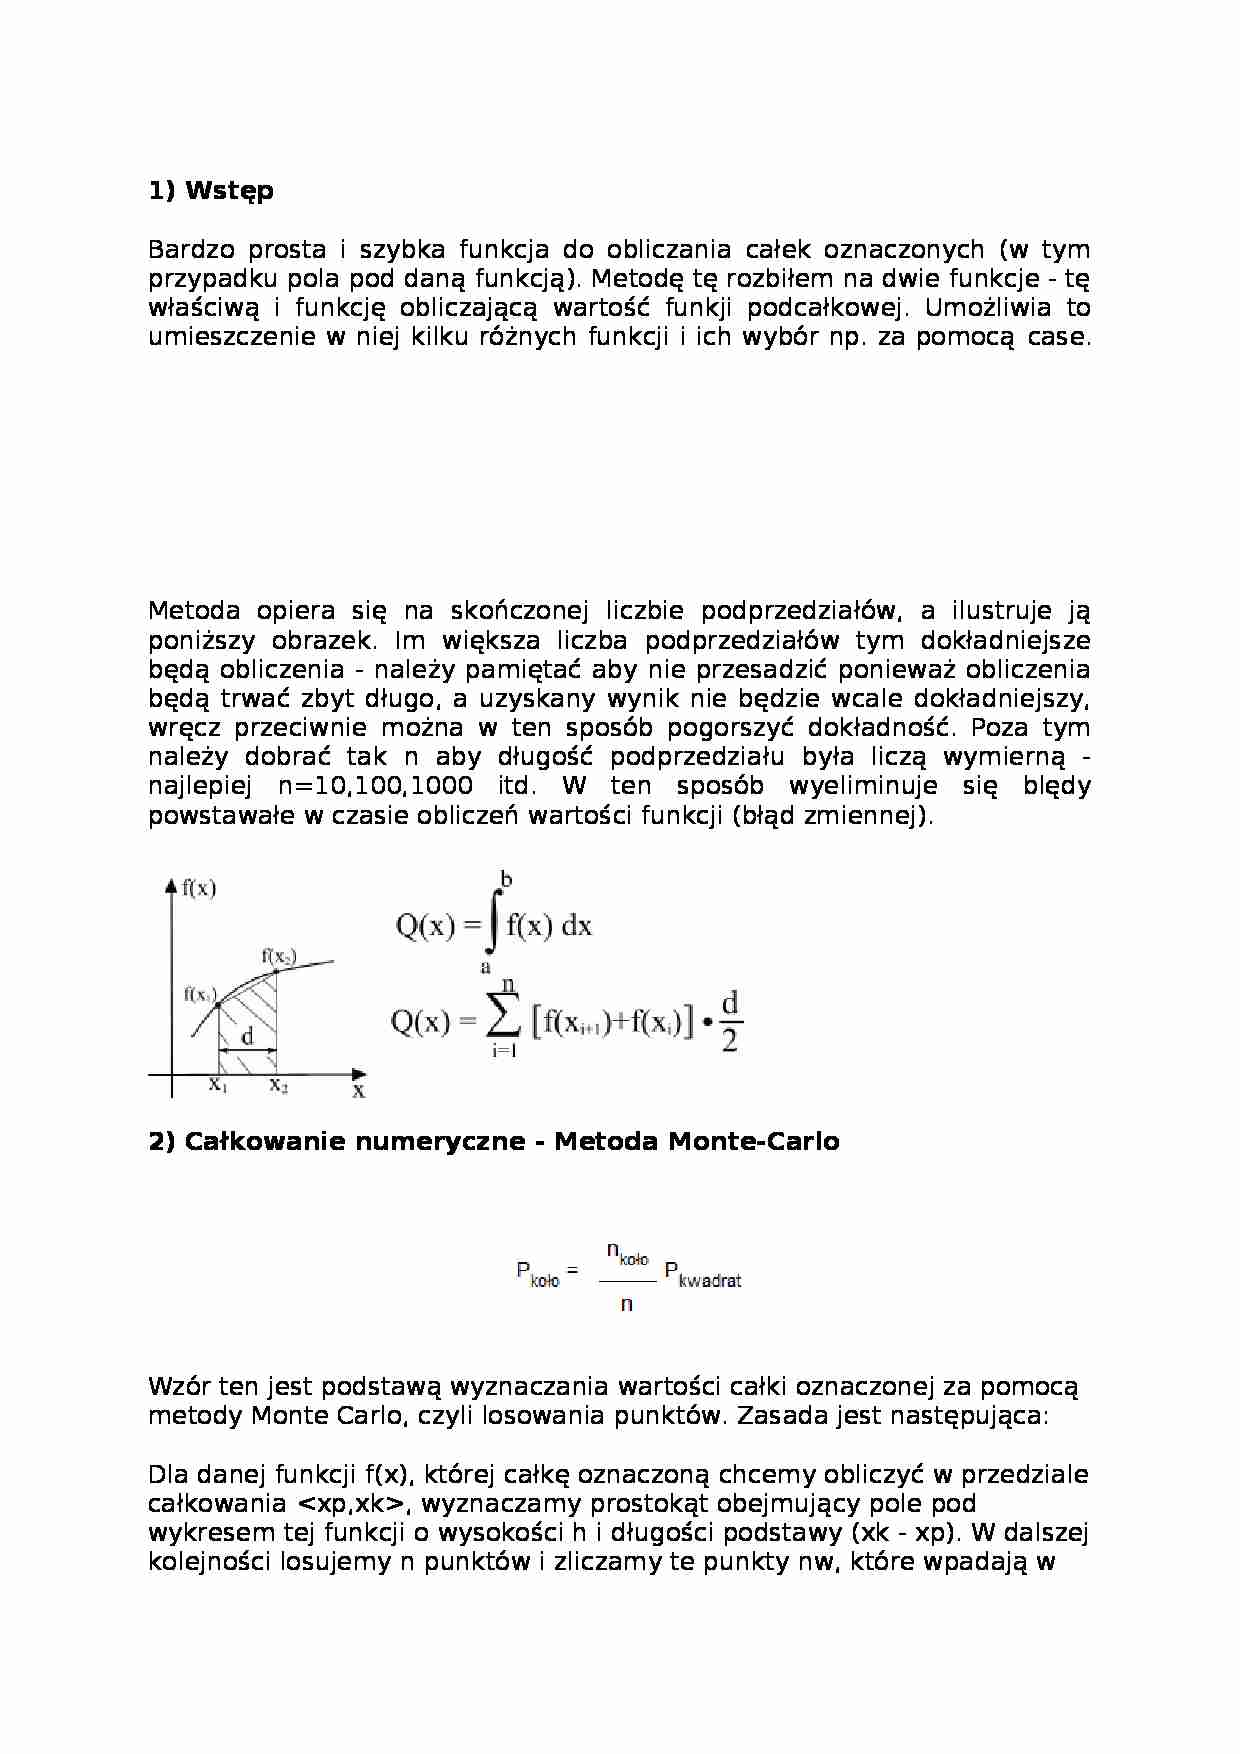 Całkowanie numeryczne - Metoda Monte-Carlo - strona 1